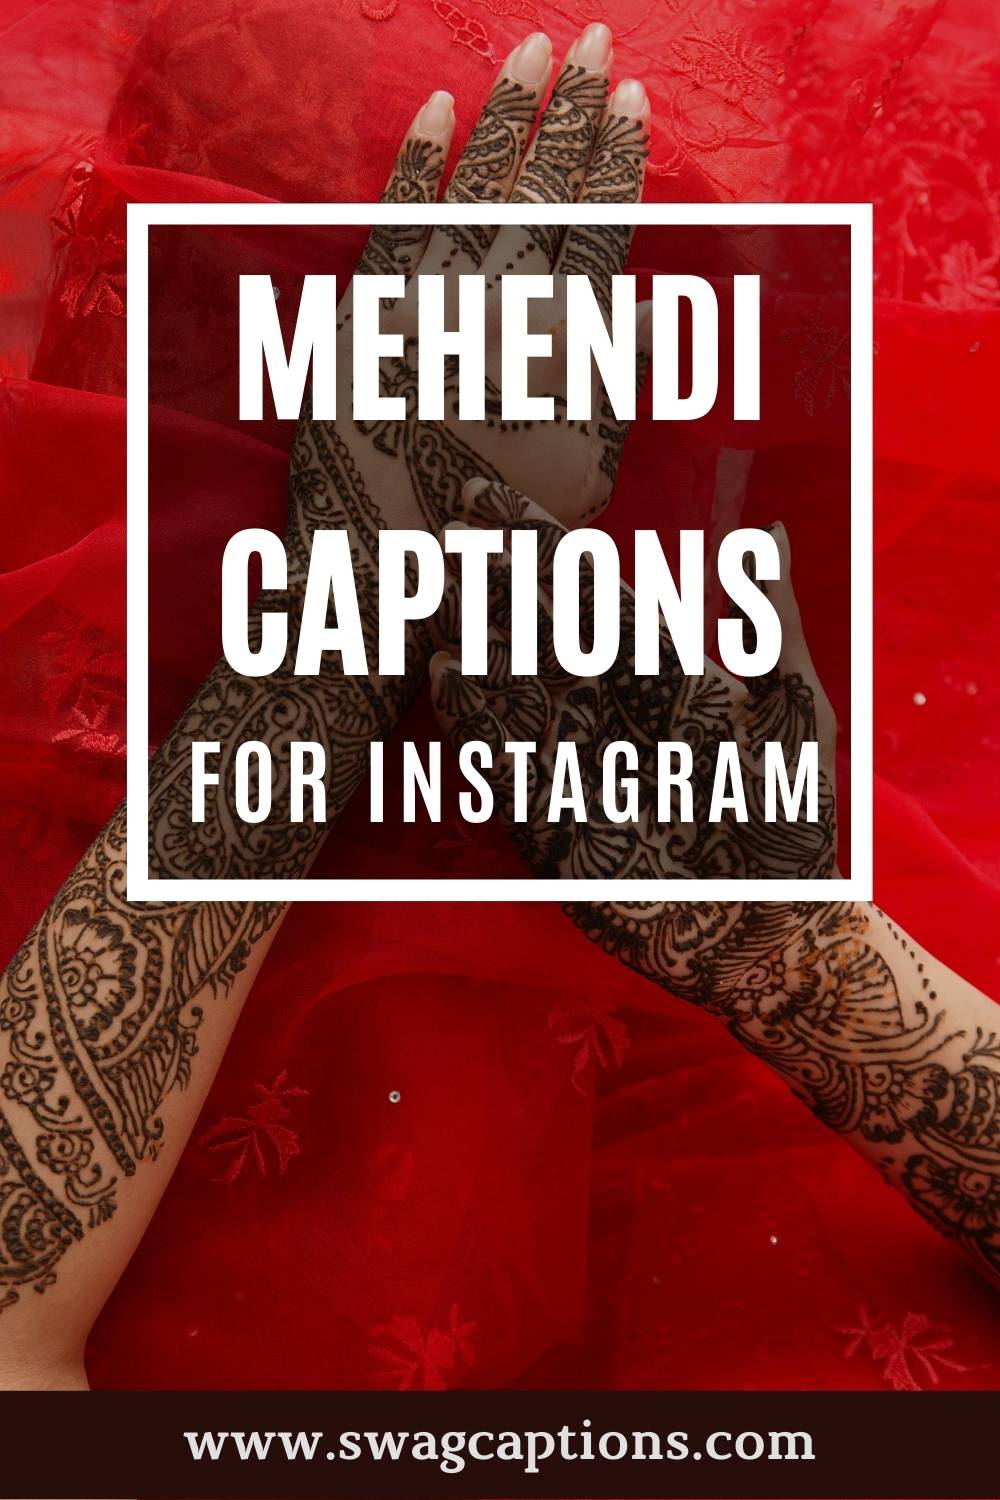 100+ good Instagram captions for mehndi designs in 2023 - Tuko.co.ke